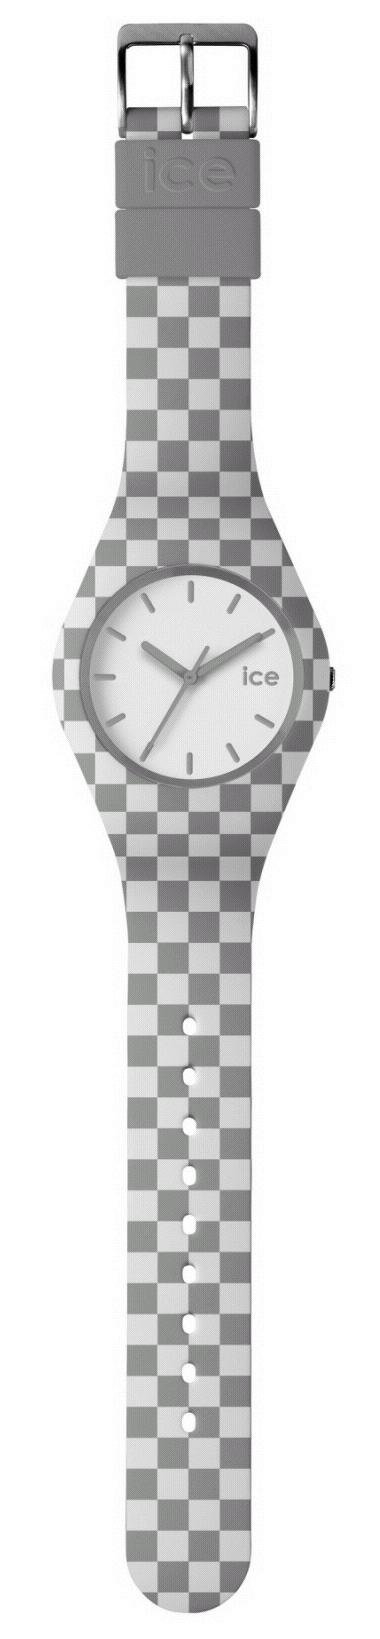 Design 28 (54) Produkt: Watches and watchbands (51) Klasse: 10-02 (72) Designer: Jean-Pierre Lutgen,